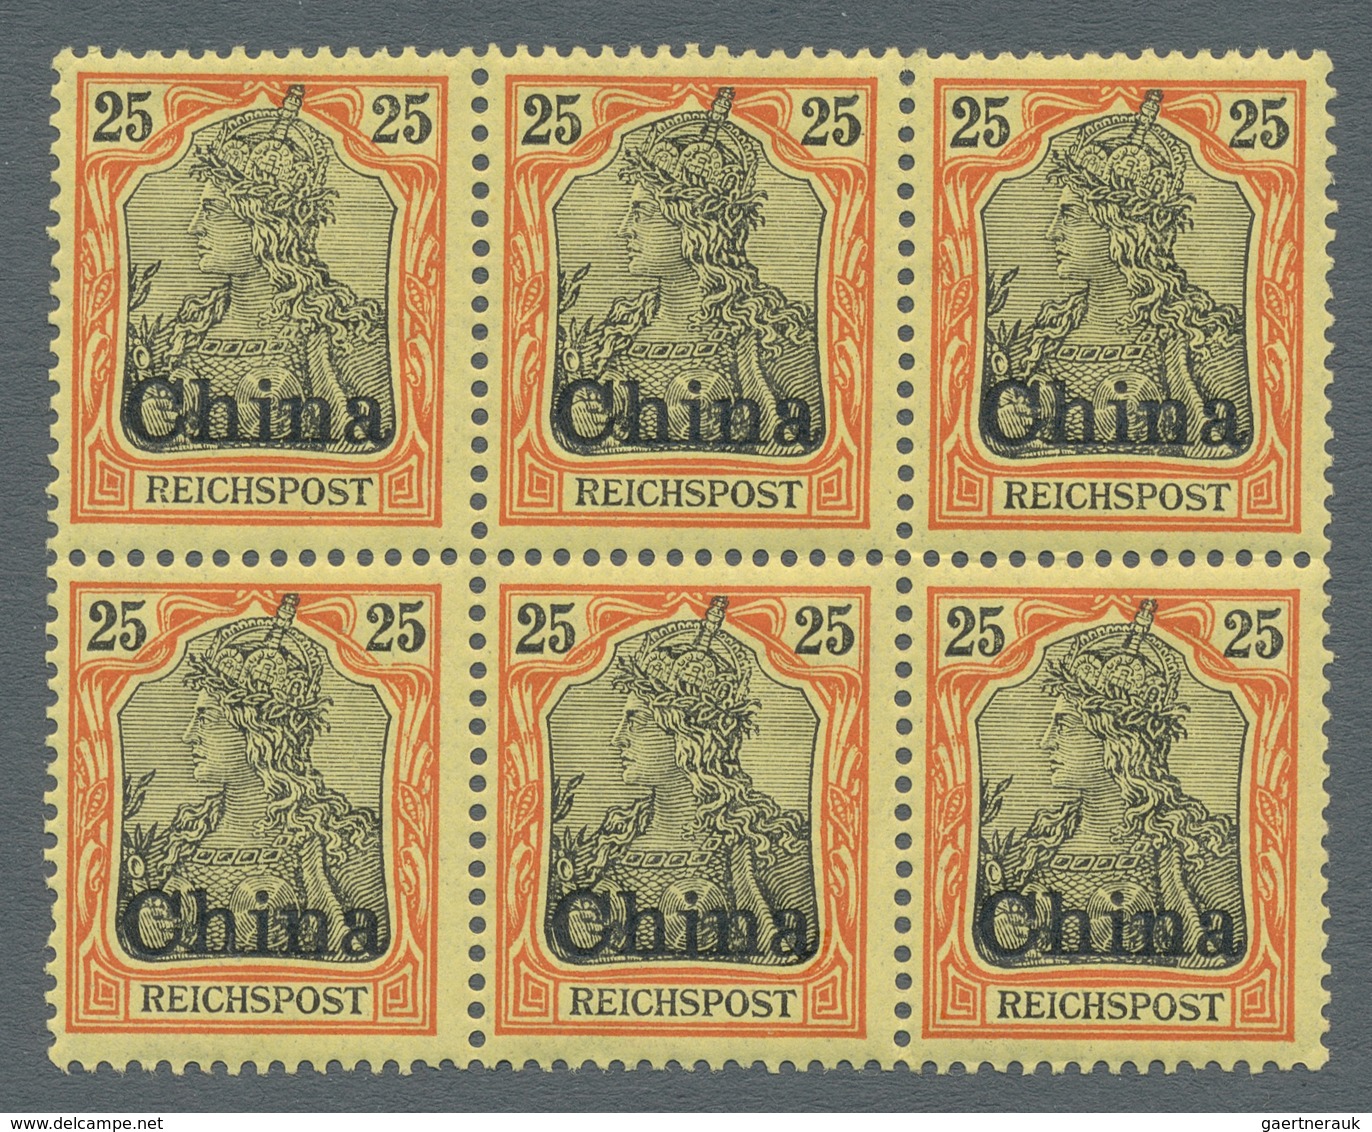 Deutsche Post In China: 1901, 25 Pfg. Germania Reichspost Mit Aufdruck CHINA Als Sechserblock (mittl - China (kantoren)